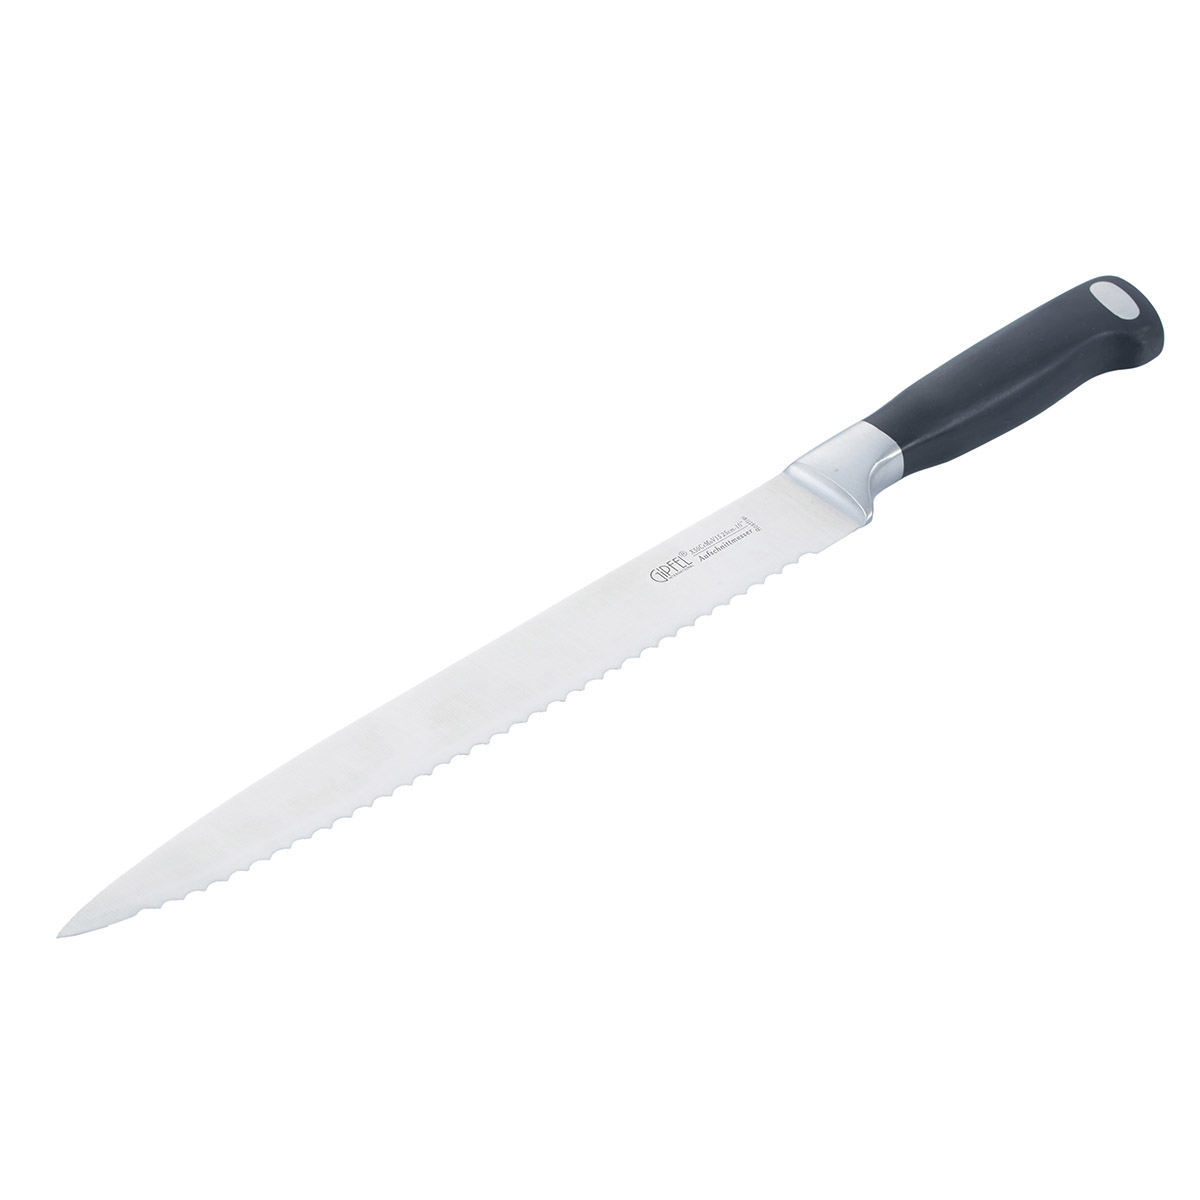 Нож разделочный Gipfel Professional Line 6766 нож разделочный gipfel professional line 6766